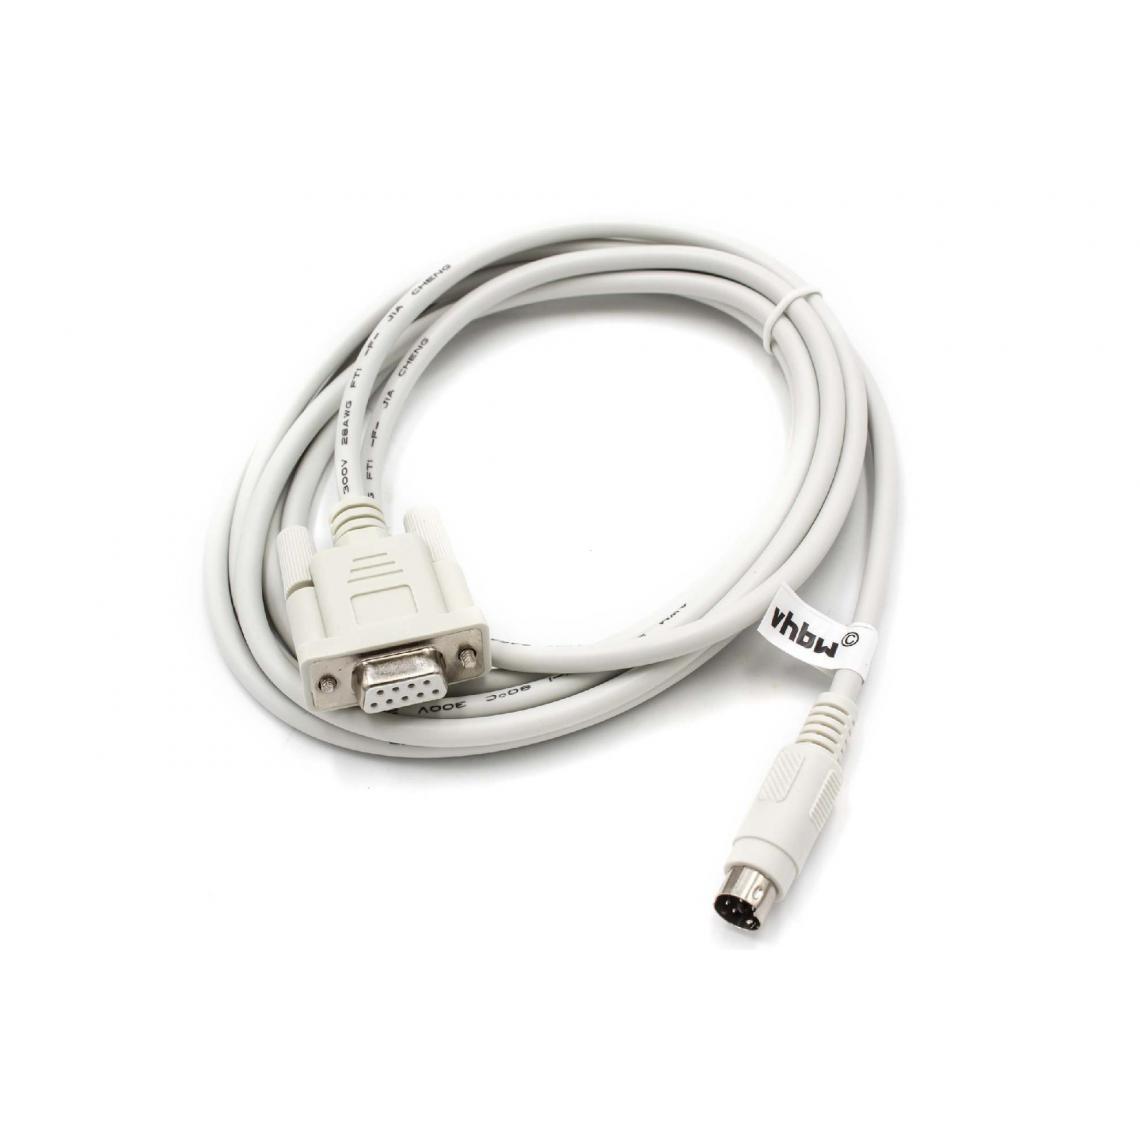 Vhbw - vhbw Câble adaptateur série RS-232 compatible avec Panasonic FP-G, FP-X, FP0, FP2 PCs et périphérique 250 cm gris - Autre appareil de mesure